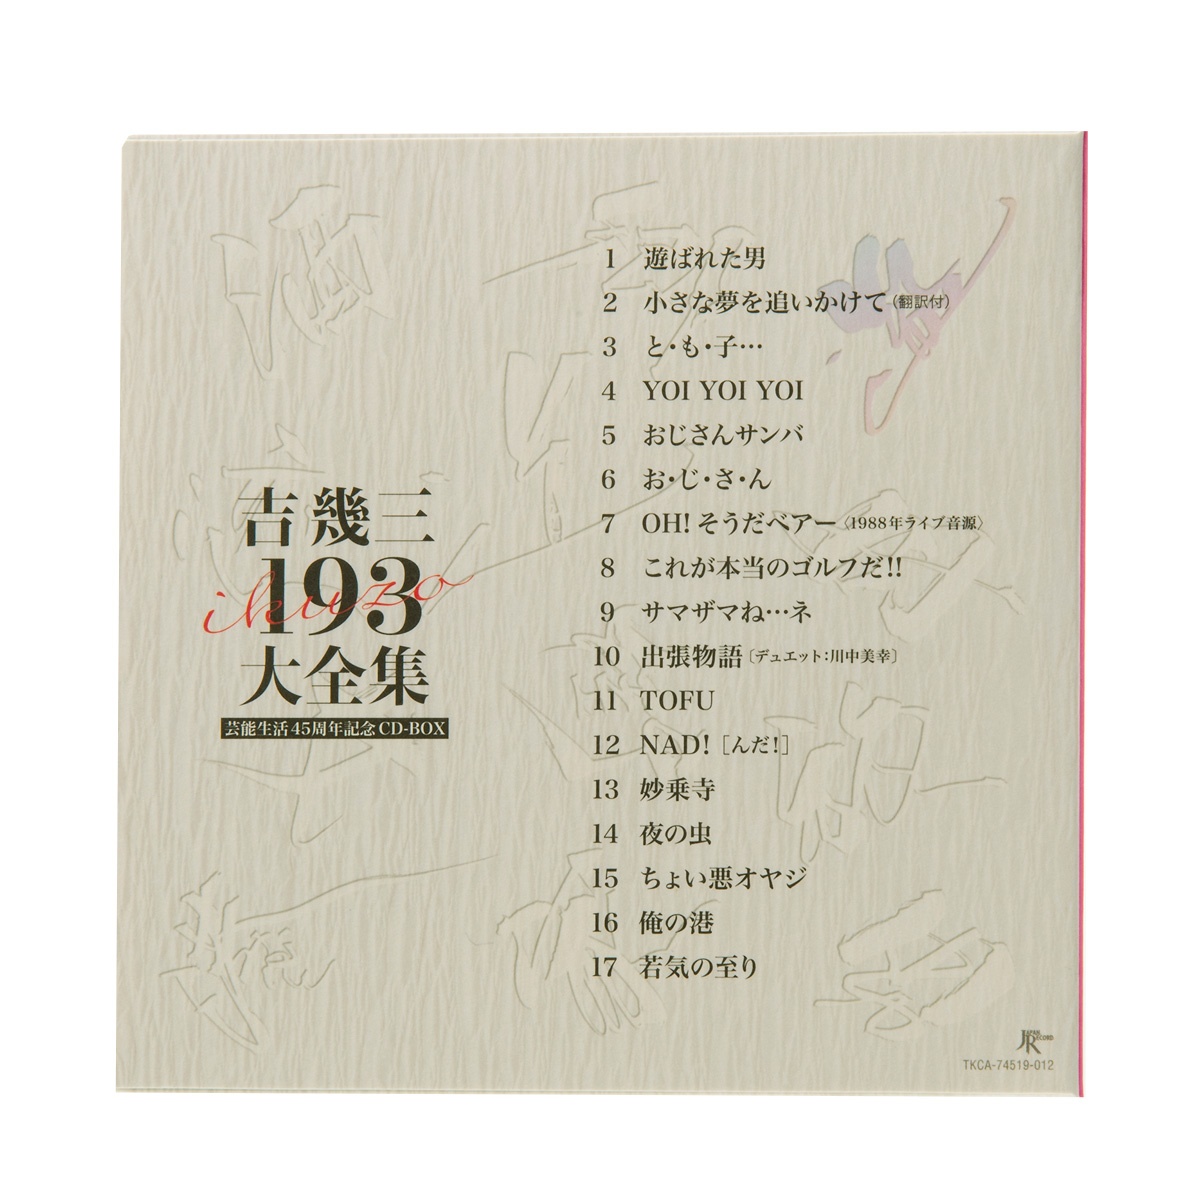 吉幾三 芸能生活45周年記念CD BOX 193大全集 - 邦楽